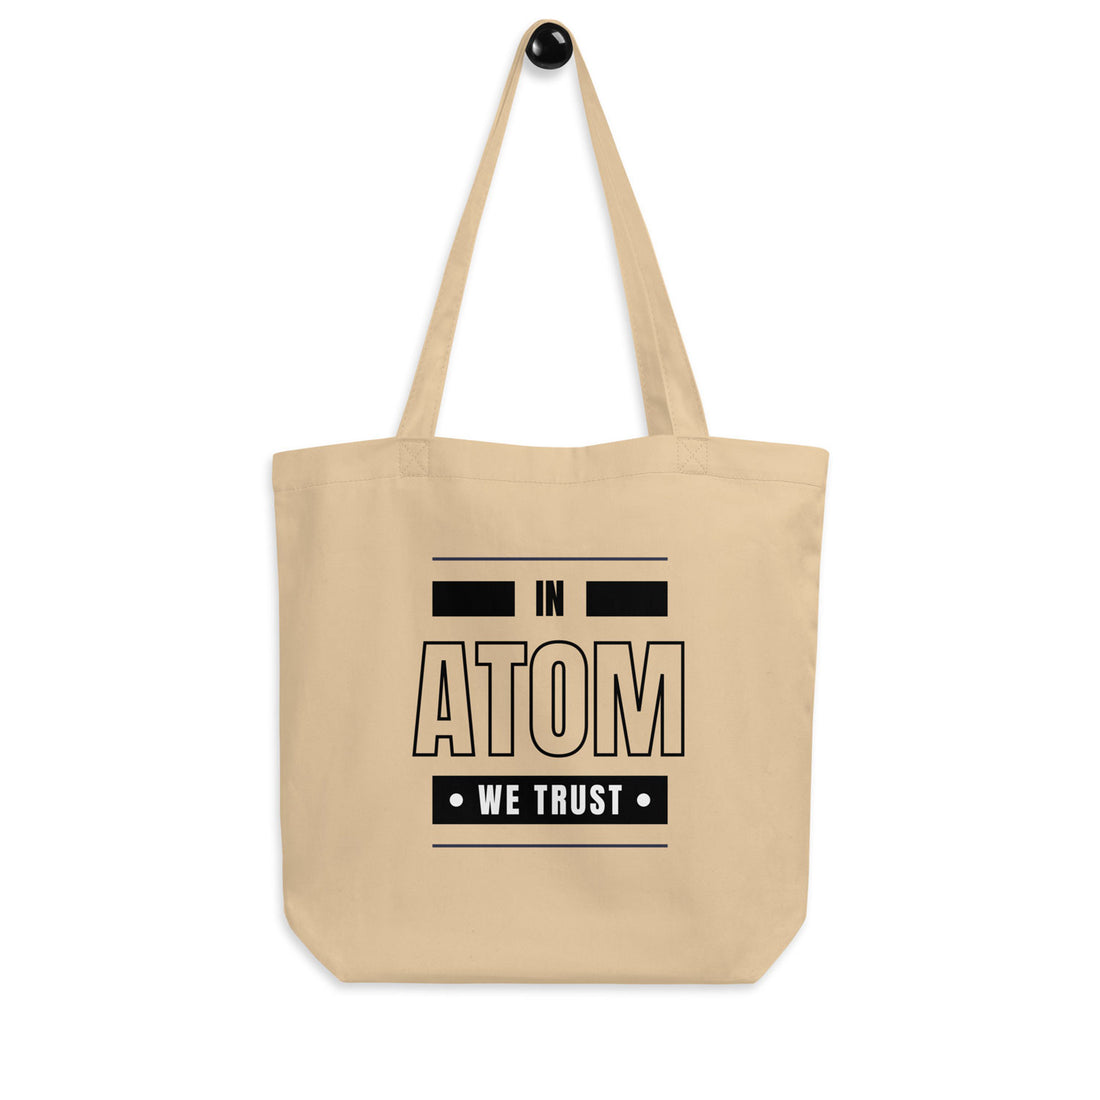 atom tote bag 